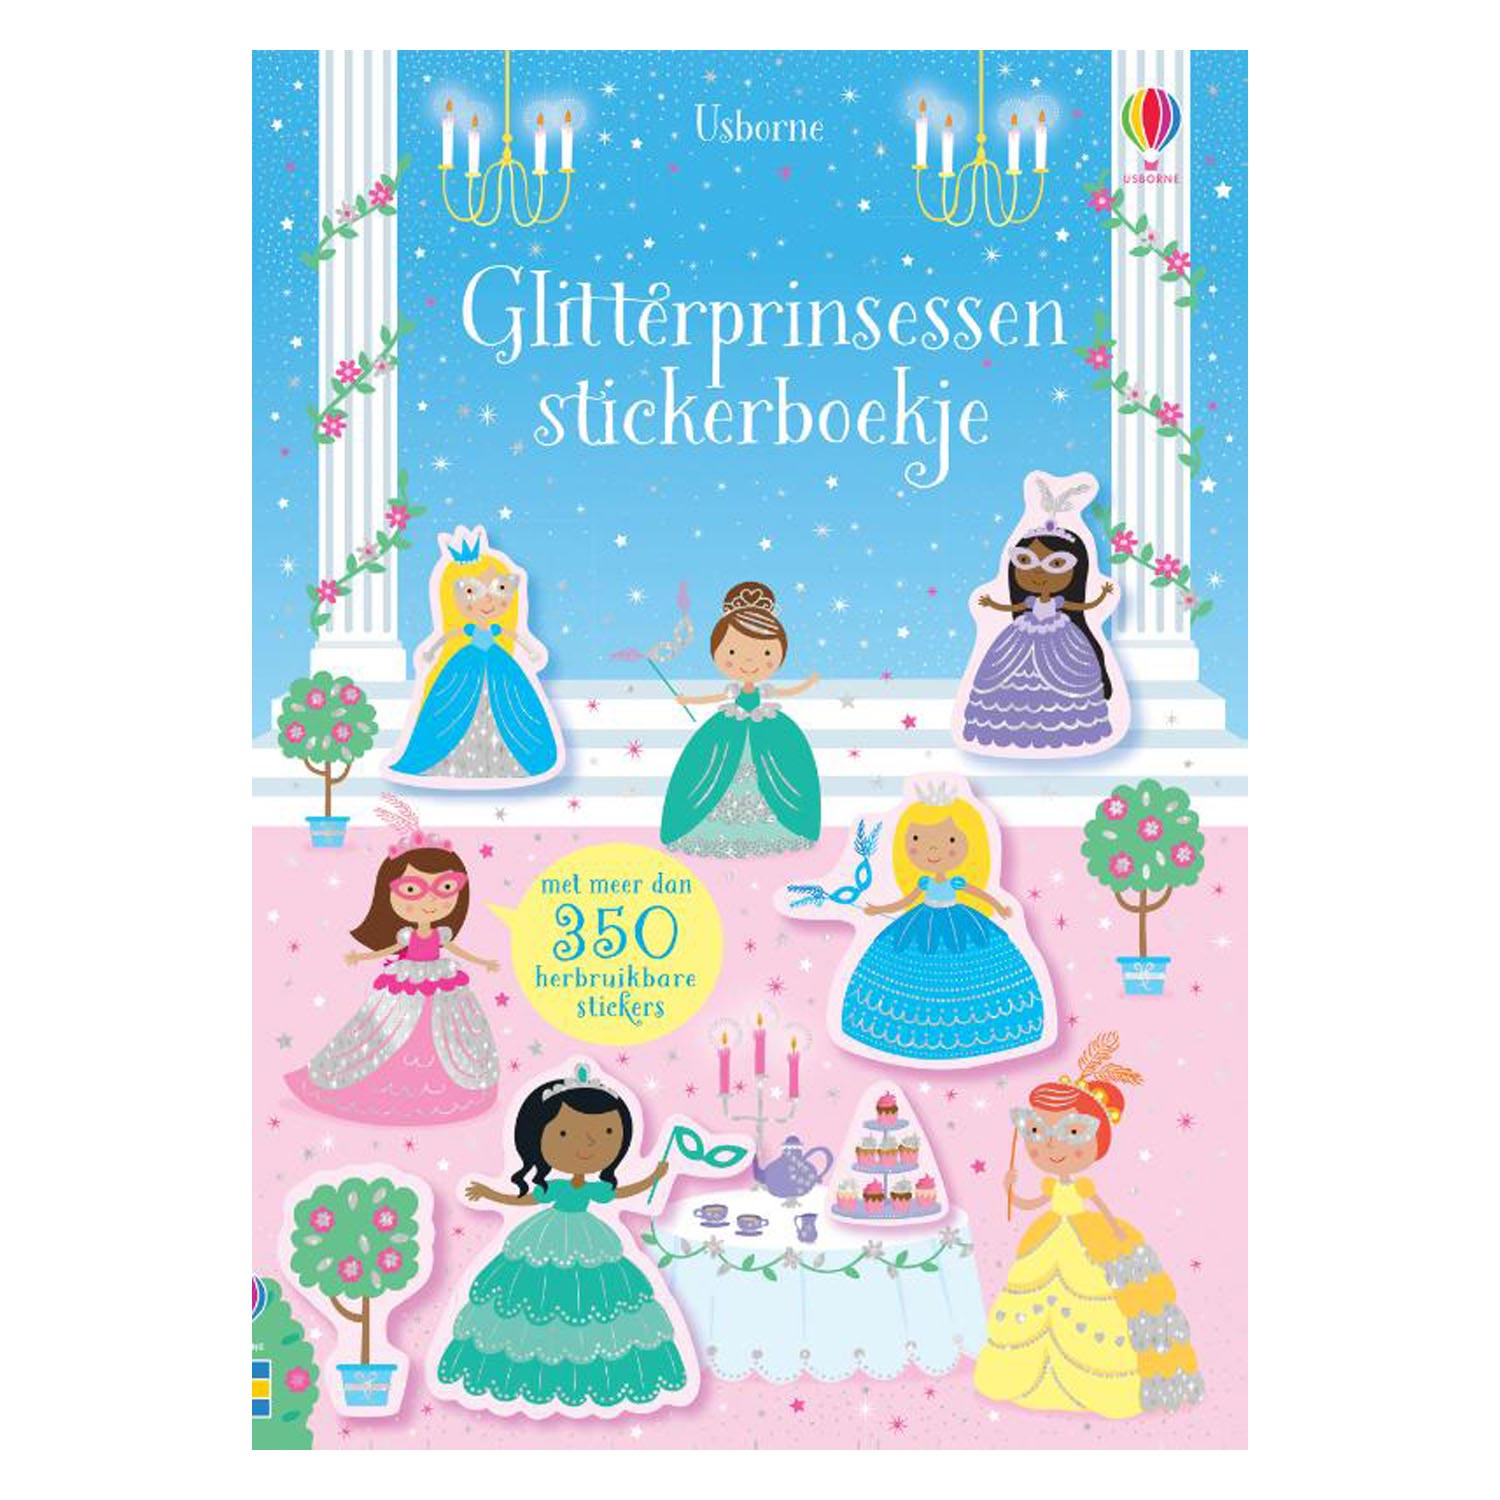 Glitterprinsessen Stickerboekje